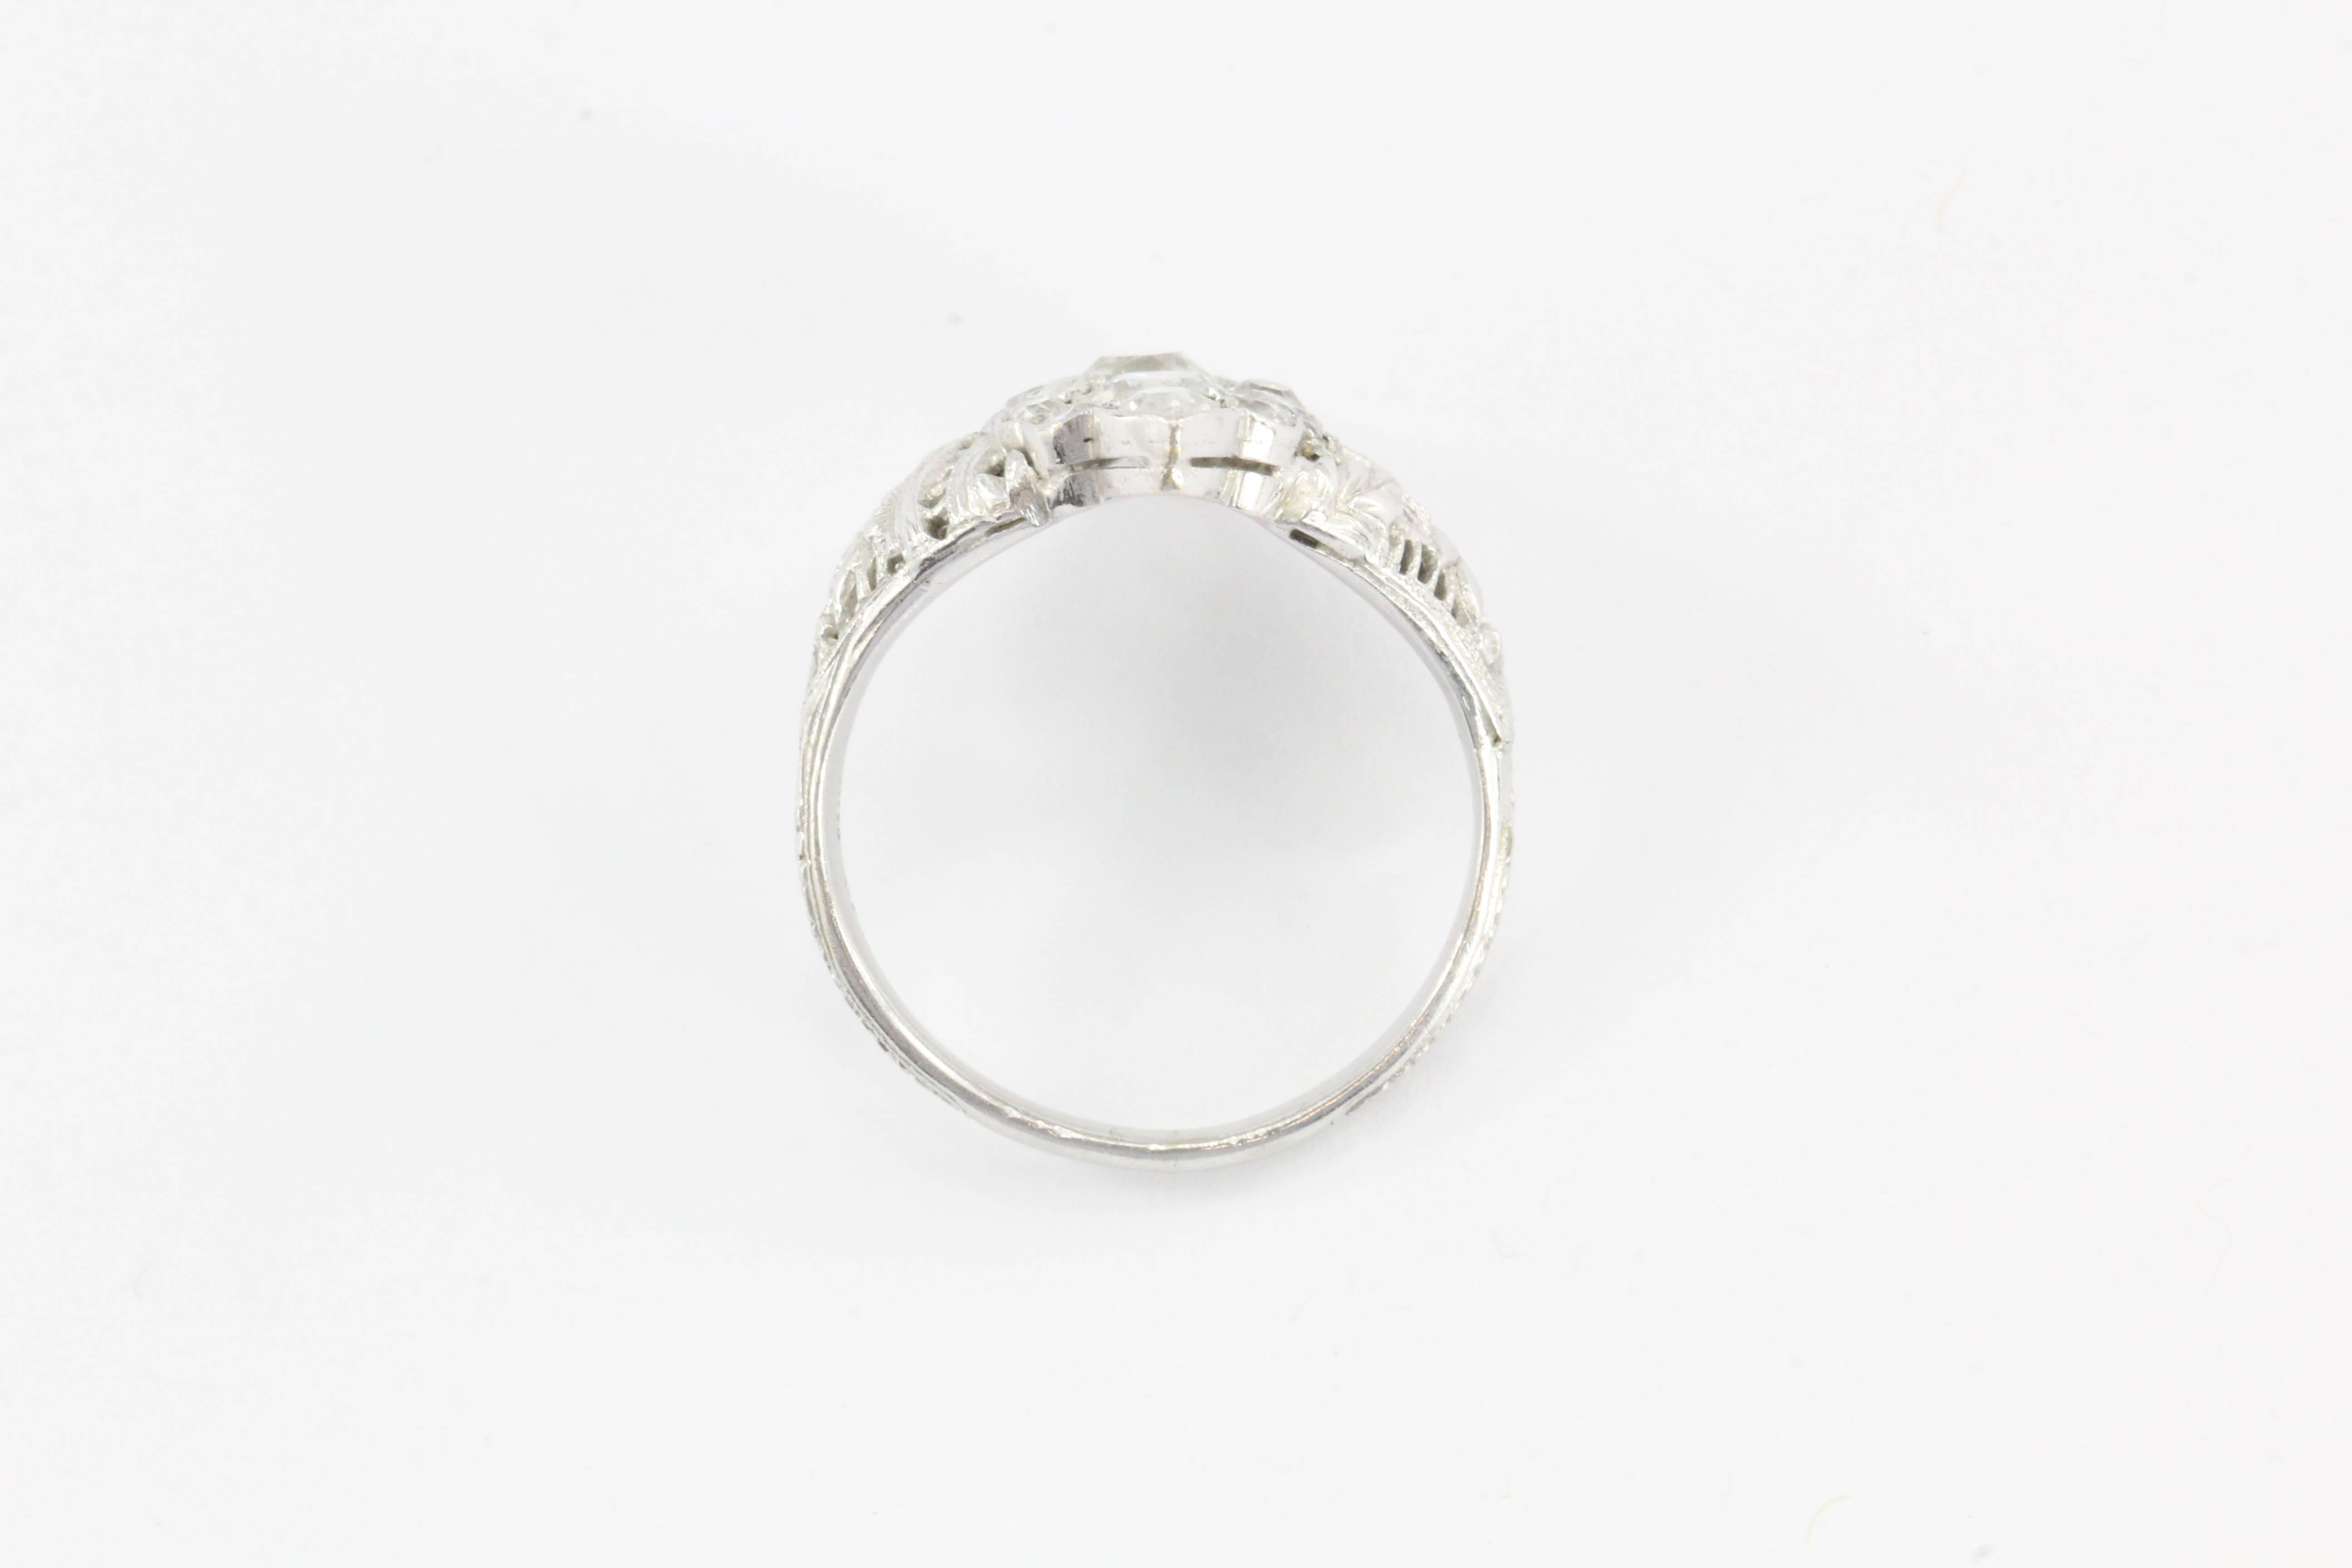 1920s Navette Old Mine Diamond Gold Ring 1